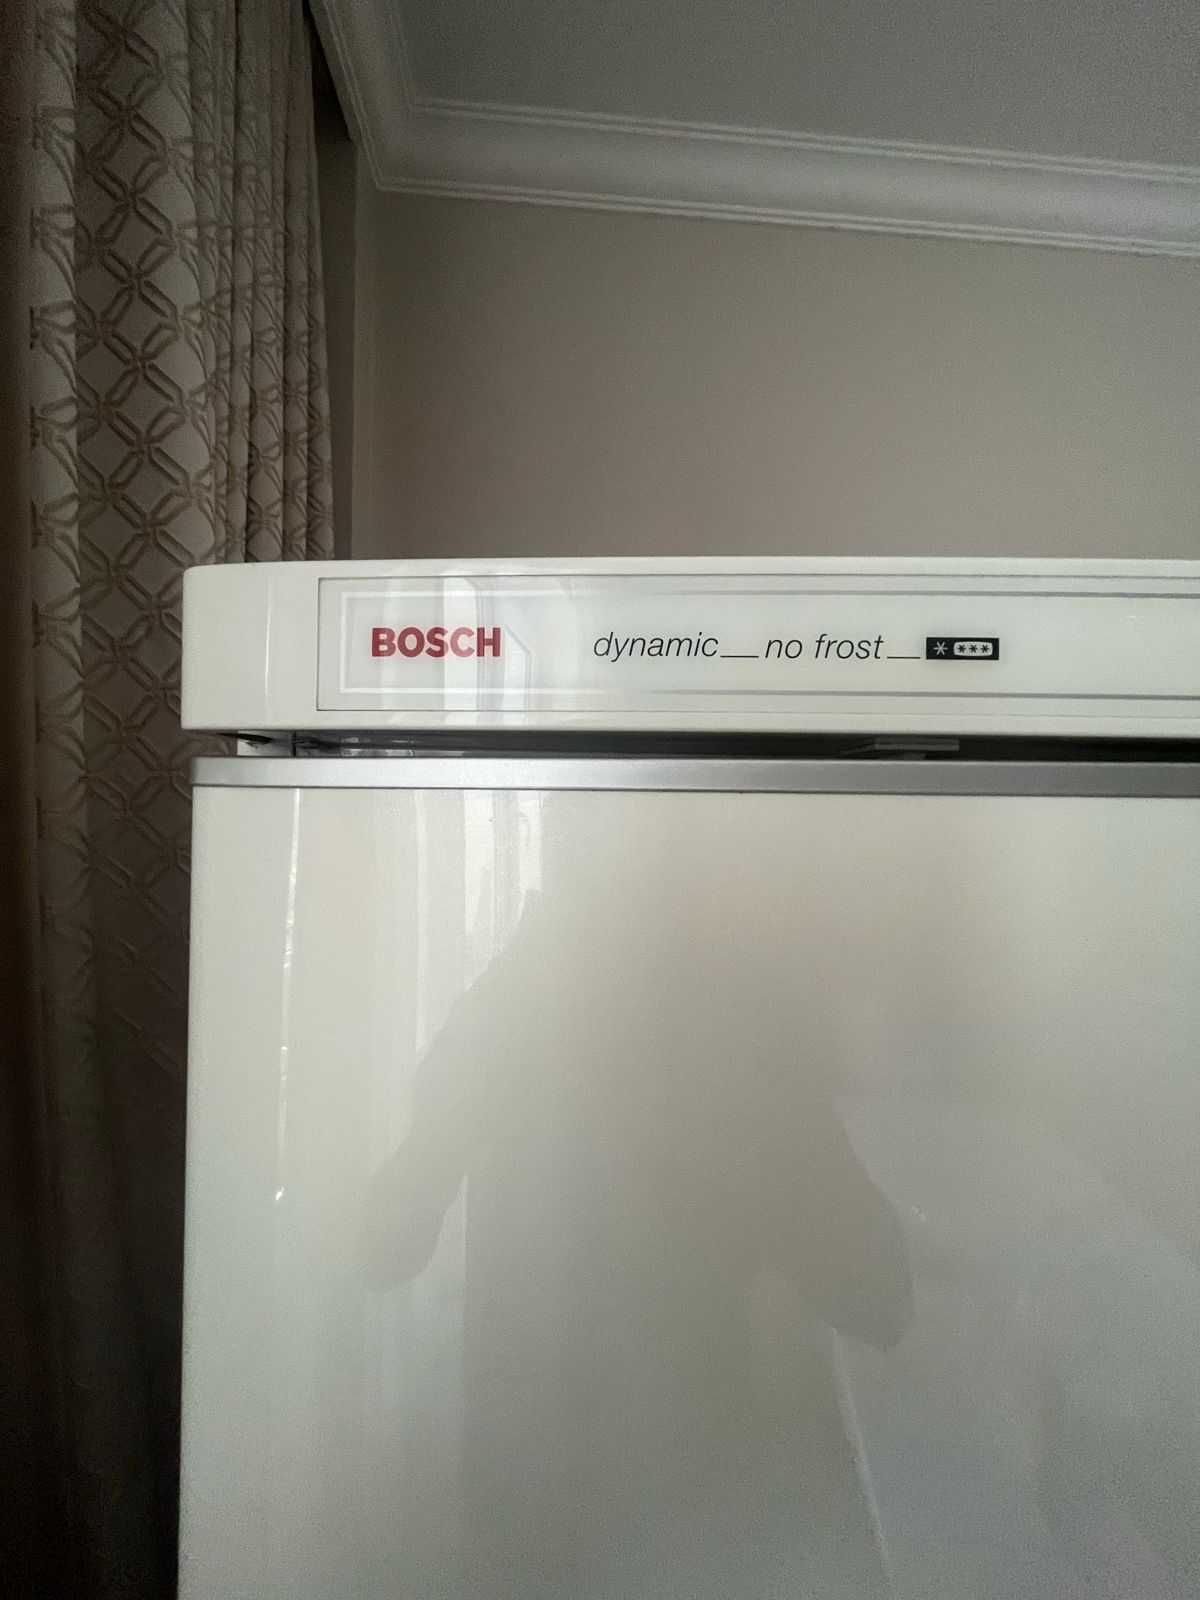 Холодильник Bosch! Производство ГЕРМАНИЯ! Идеально работает!